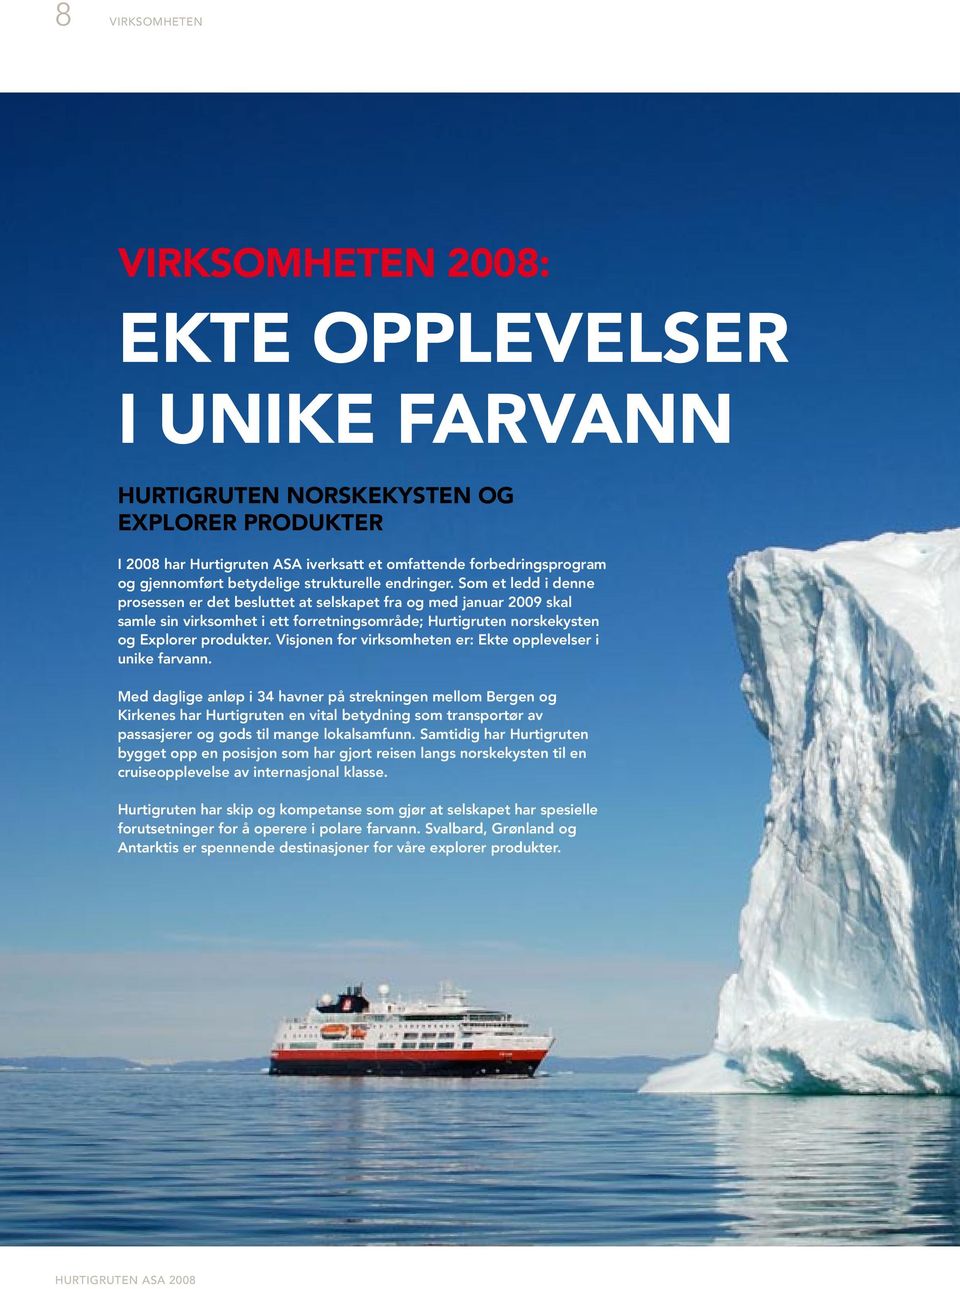 Som et ledd i denne prosessen er det besluttet at selskapet fra og med januar 2009 skal samle sin virksomhet i ett forretningsområde; Hurtigruten norskekysten og Explorer produkter.